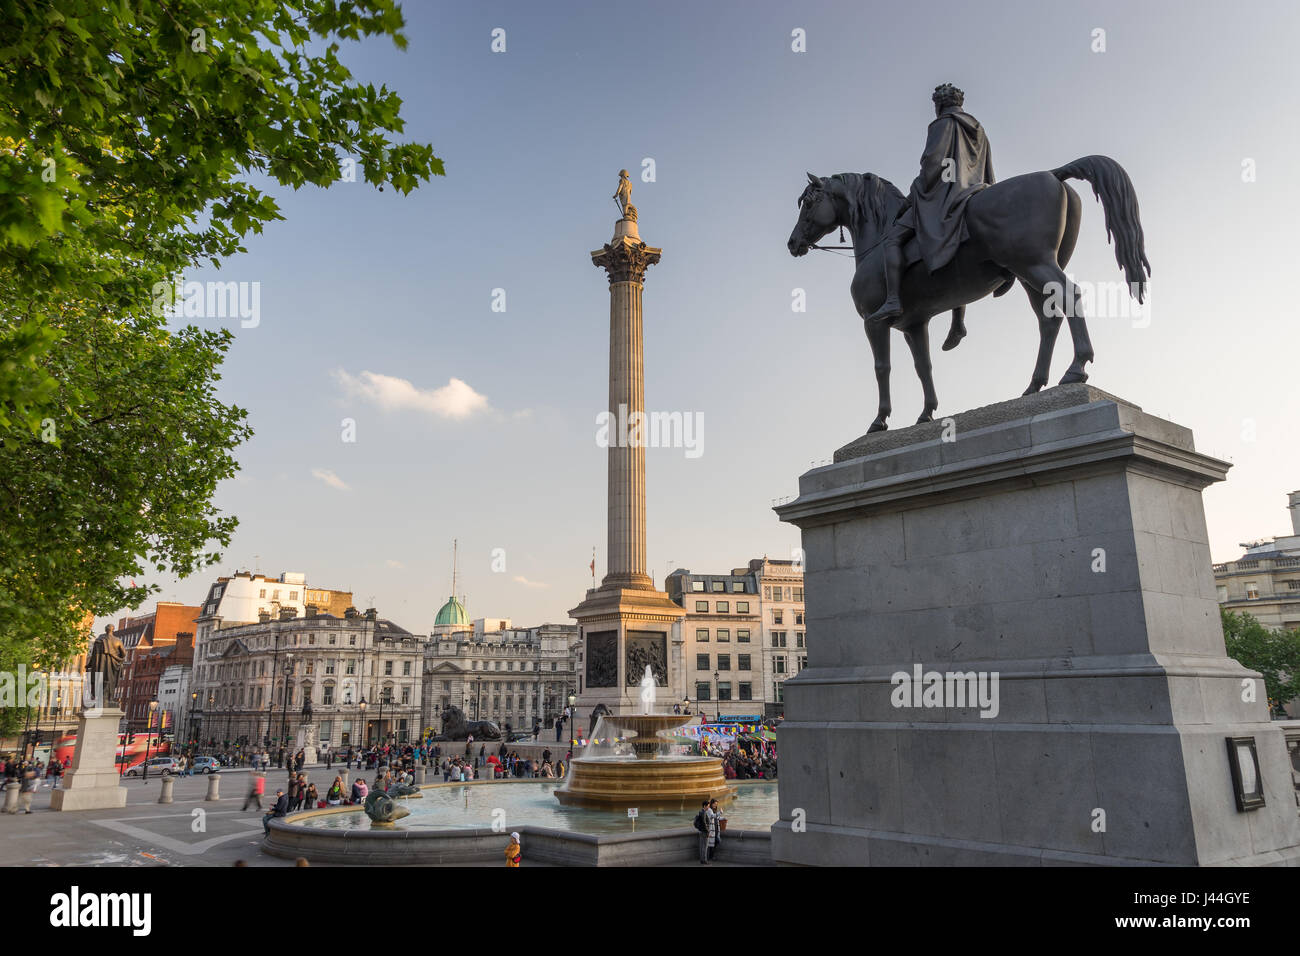 Vista esterna di Trafalgar Square di attrazione turistica di Londra, con vedute della fontana e la Colonna di Nelson durante la prima serata in primavera. Foto Stock